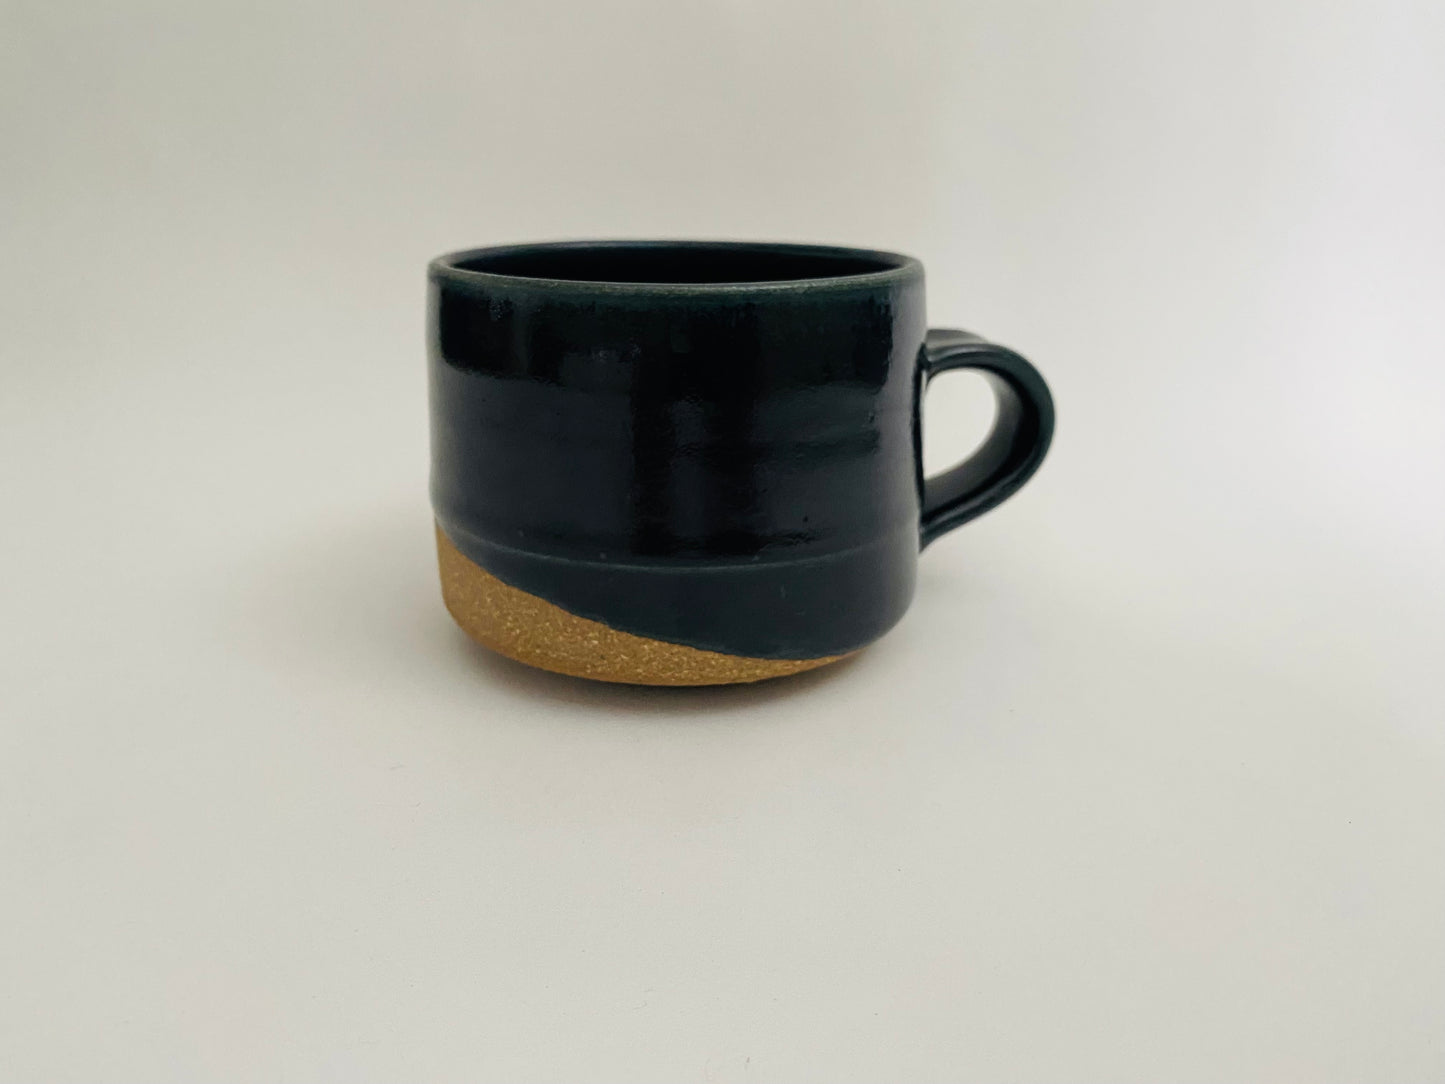 Midnight blue stoneware mug